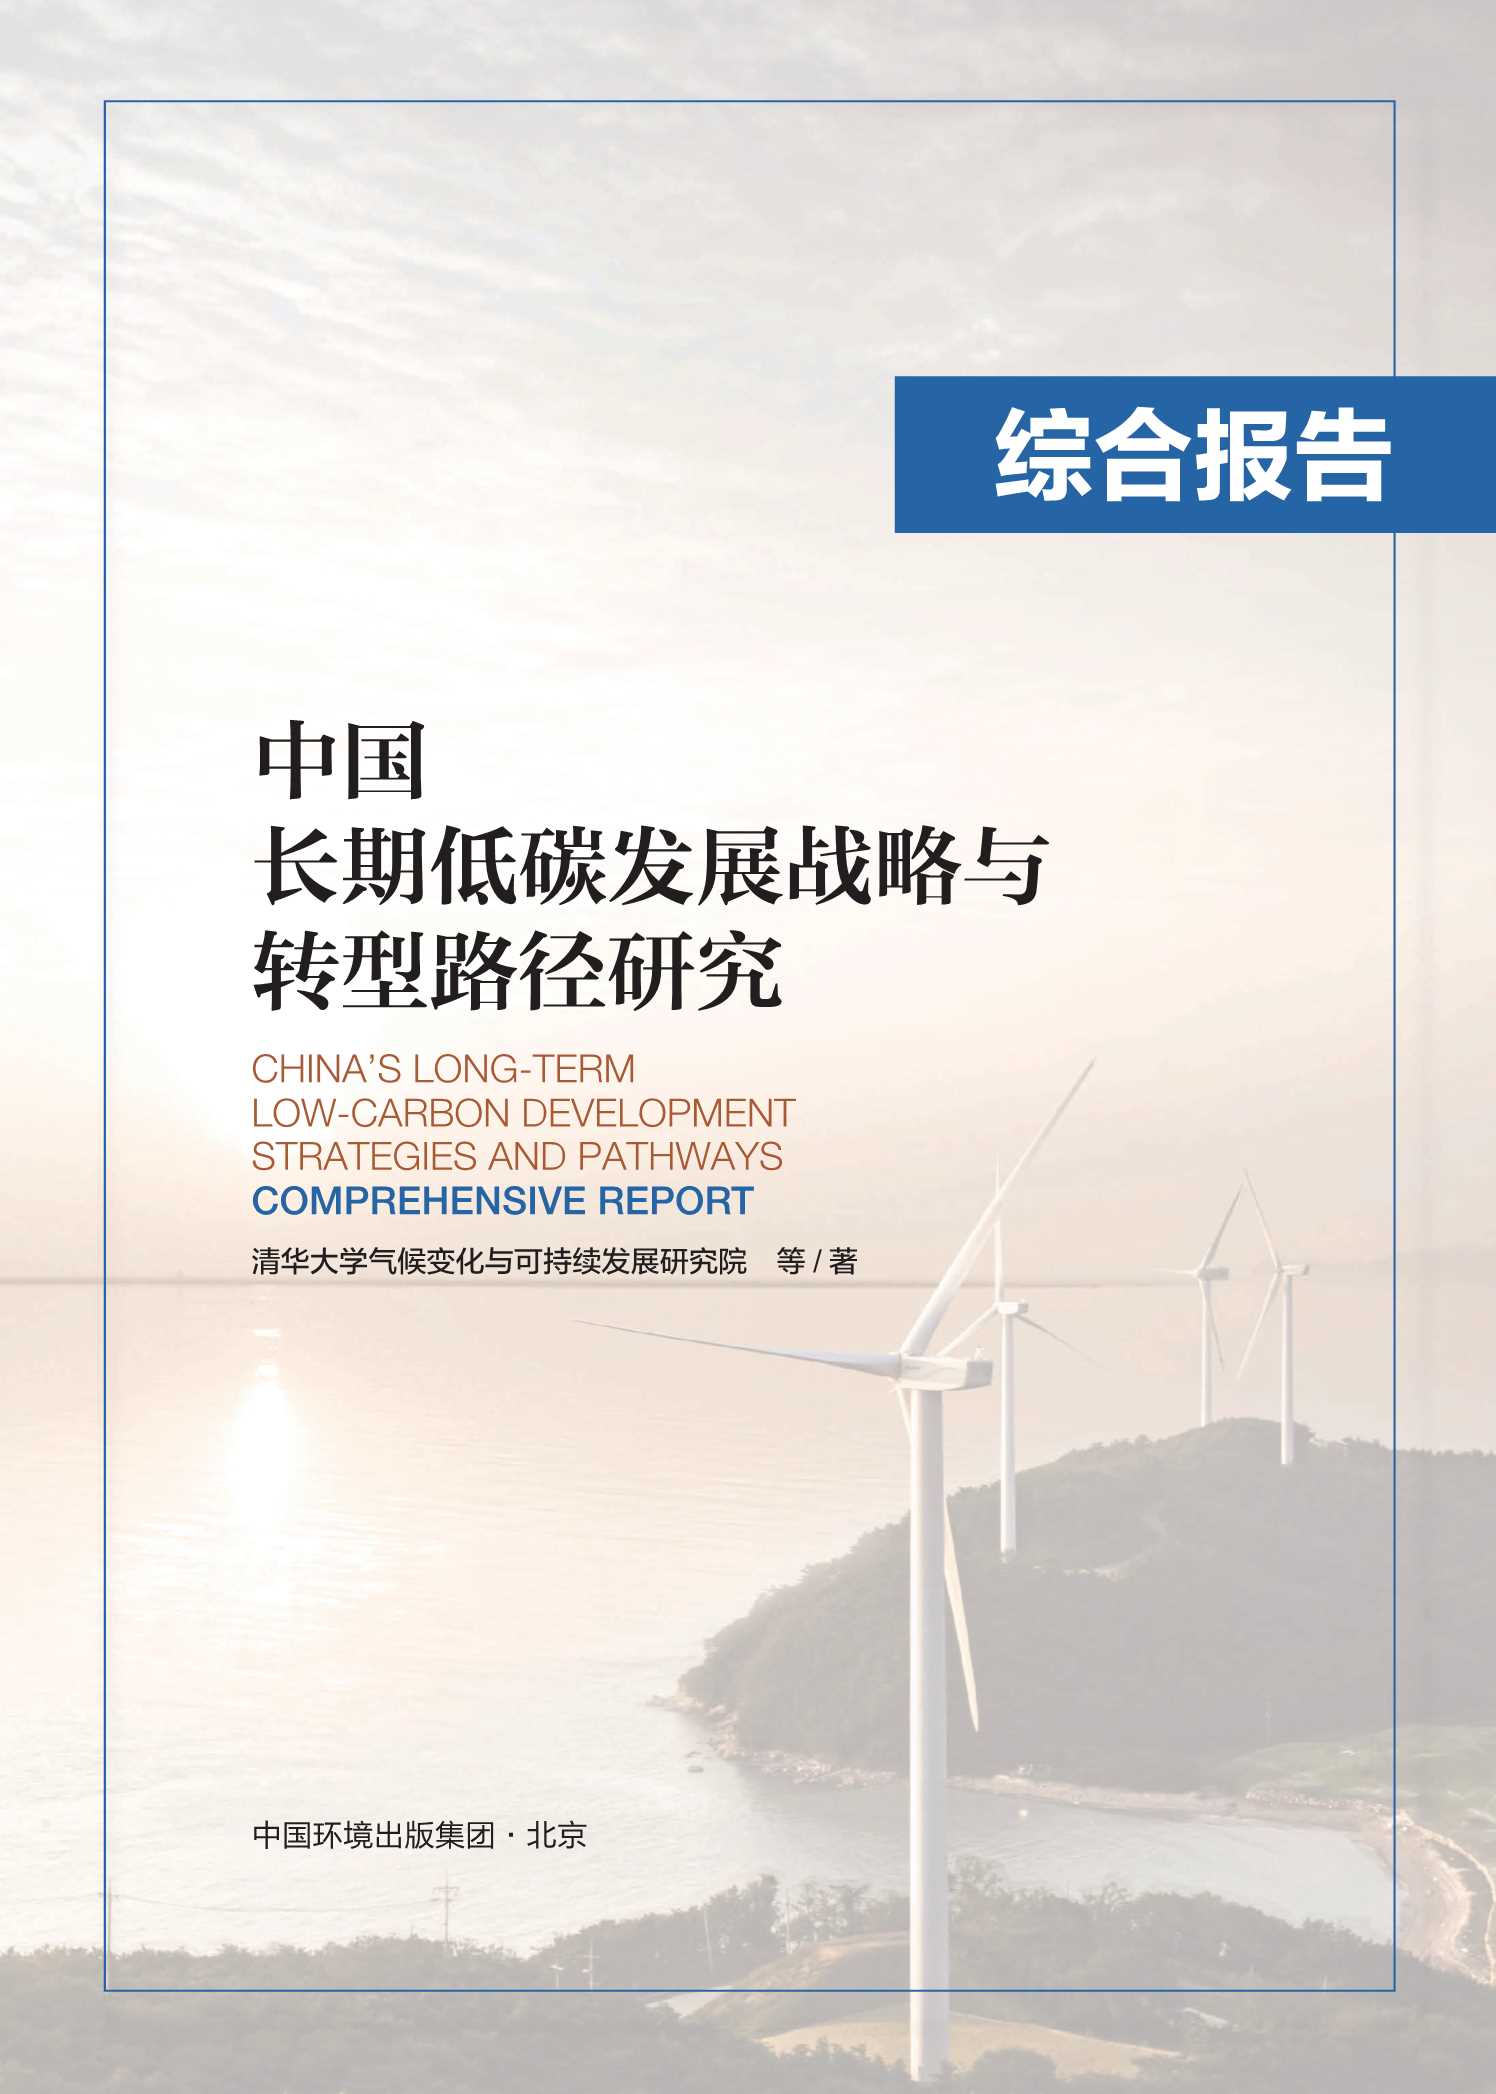 清华大学-中国长期低碳发展战略与转型路径研究综合报告-2021.07-18页